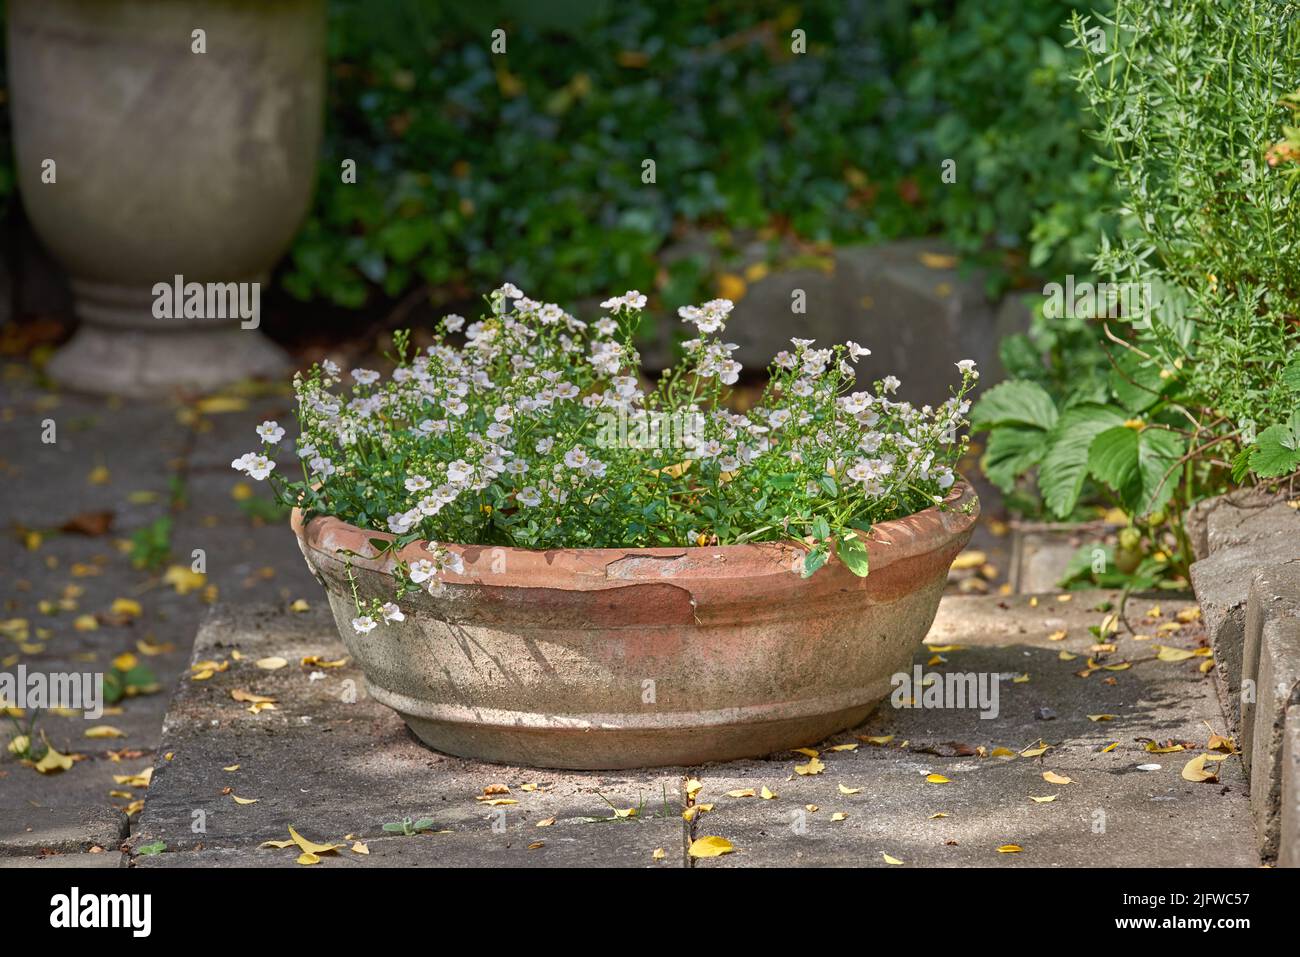 Pansies blanches poussant dans un vase dans un jardin d'arrière-cour en été. De belles plantes fleurissent sur le pavage au printemps en plein air. Petites plantes à fleurs bourgeonnantes Banque D'Images